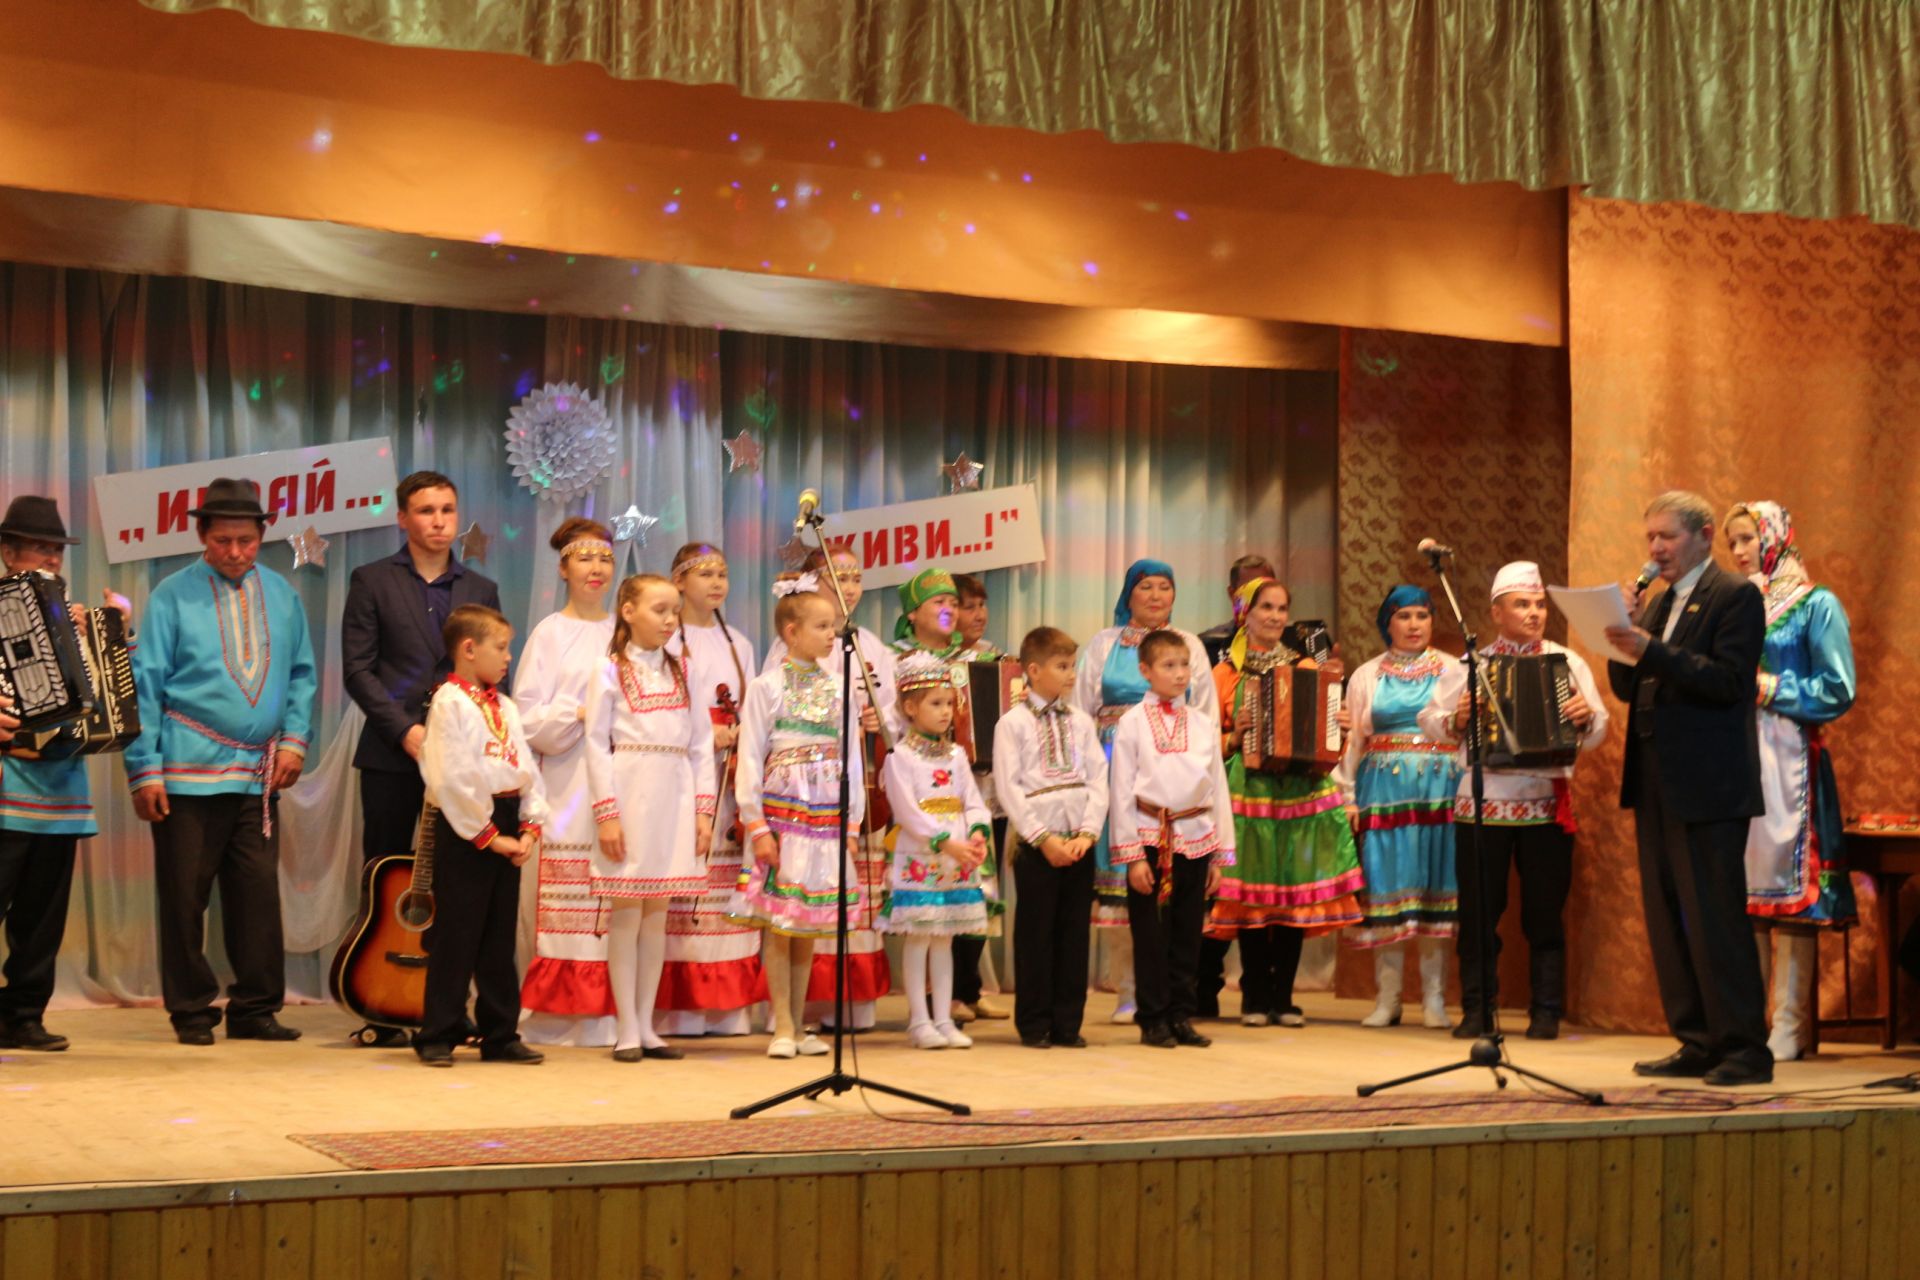 В Менделеевском районе прошел II межрайонный фестиваль исполнителей на народных музыкальных инструментах «Играй... Живи...!»